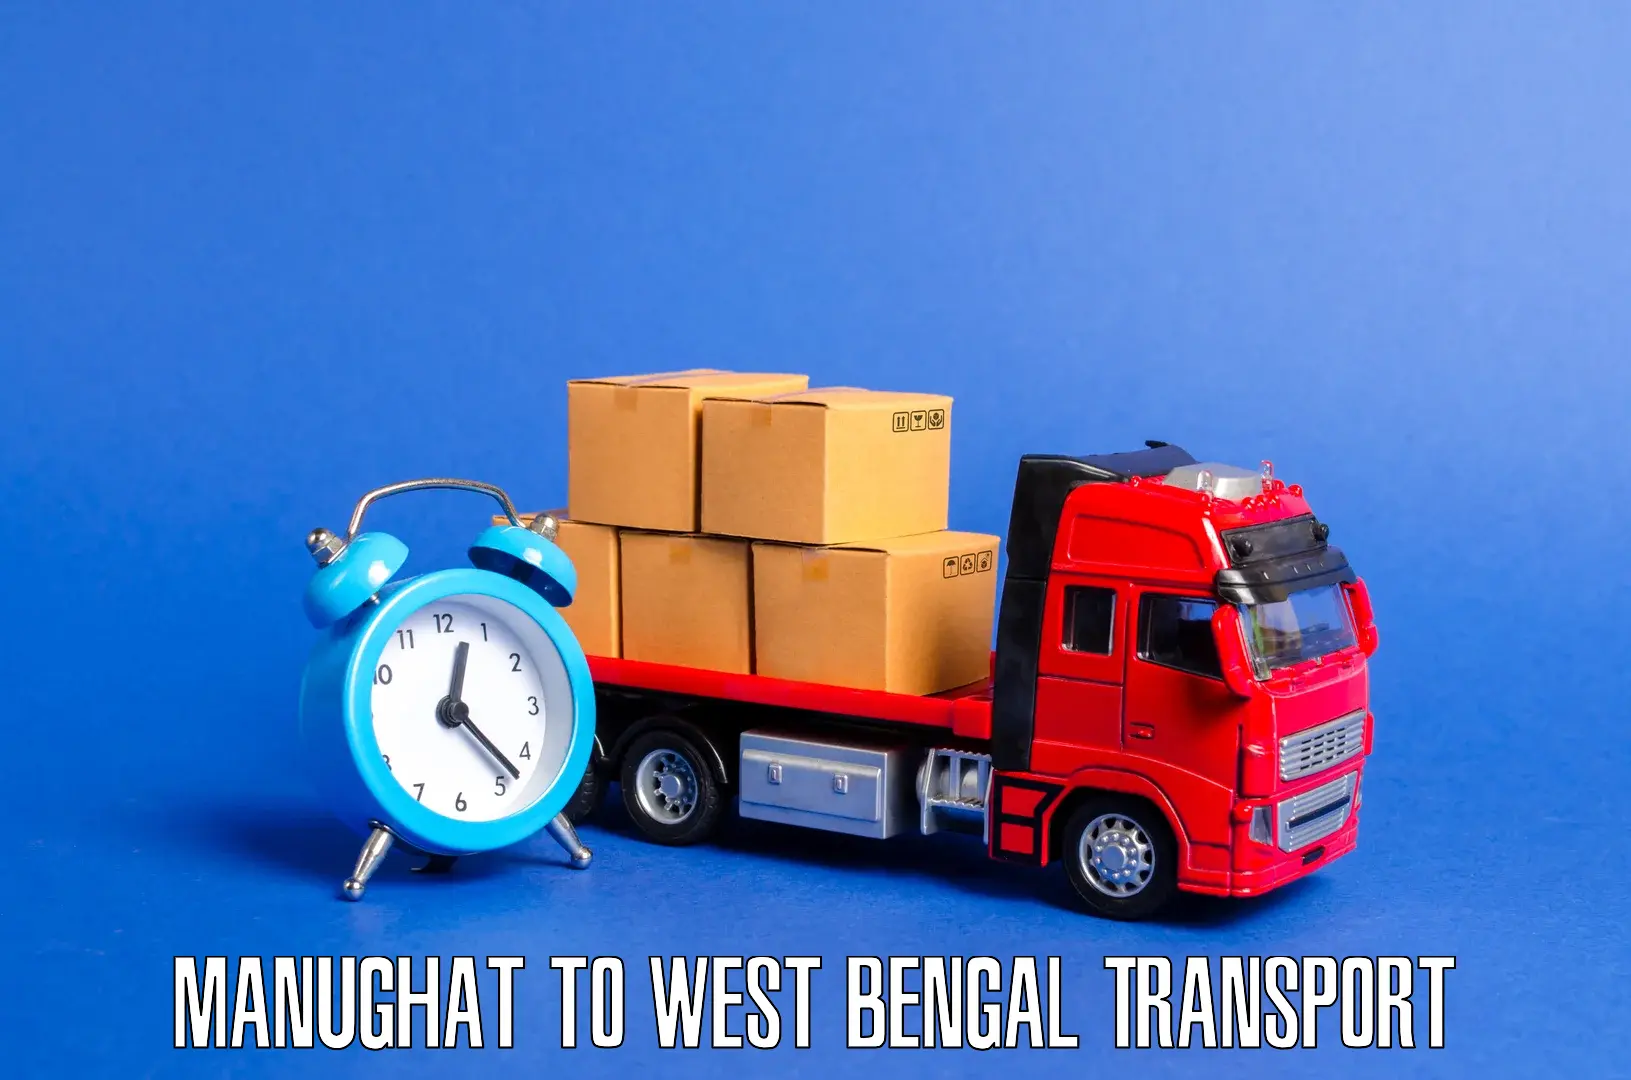 Furniture transport service Manughat to Shantiniketan